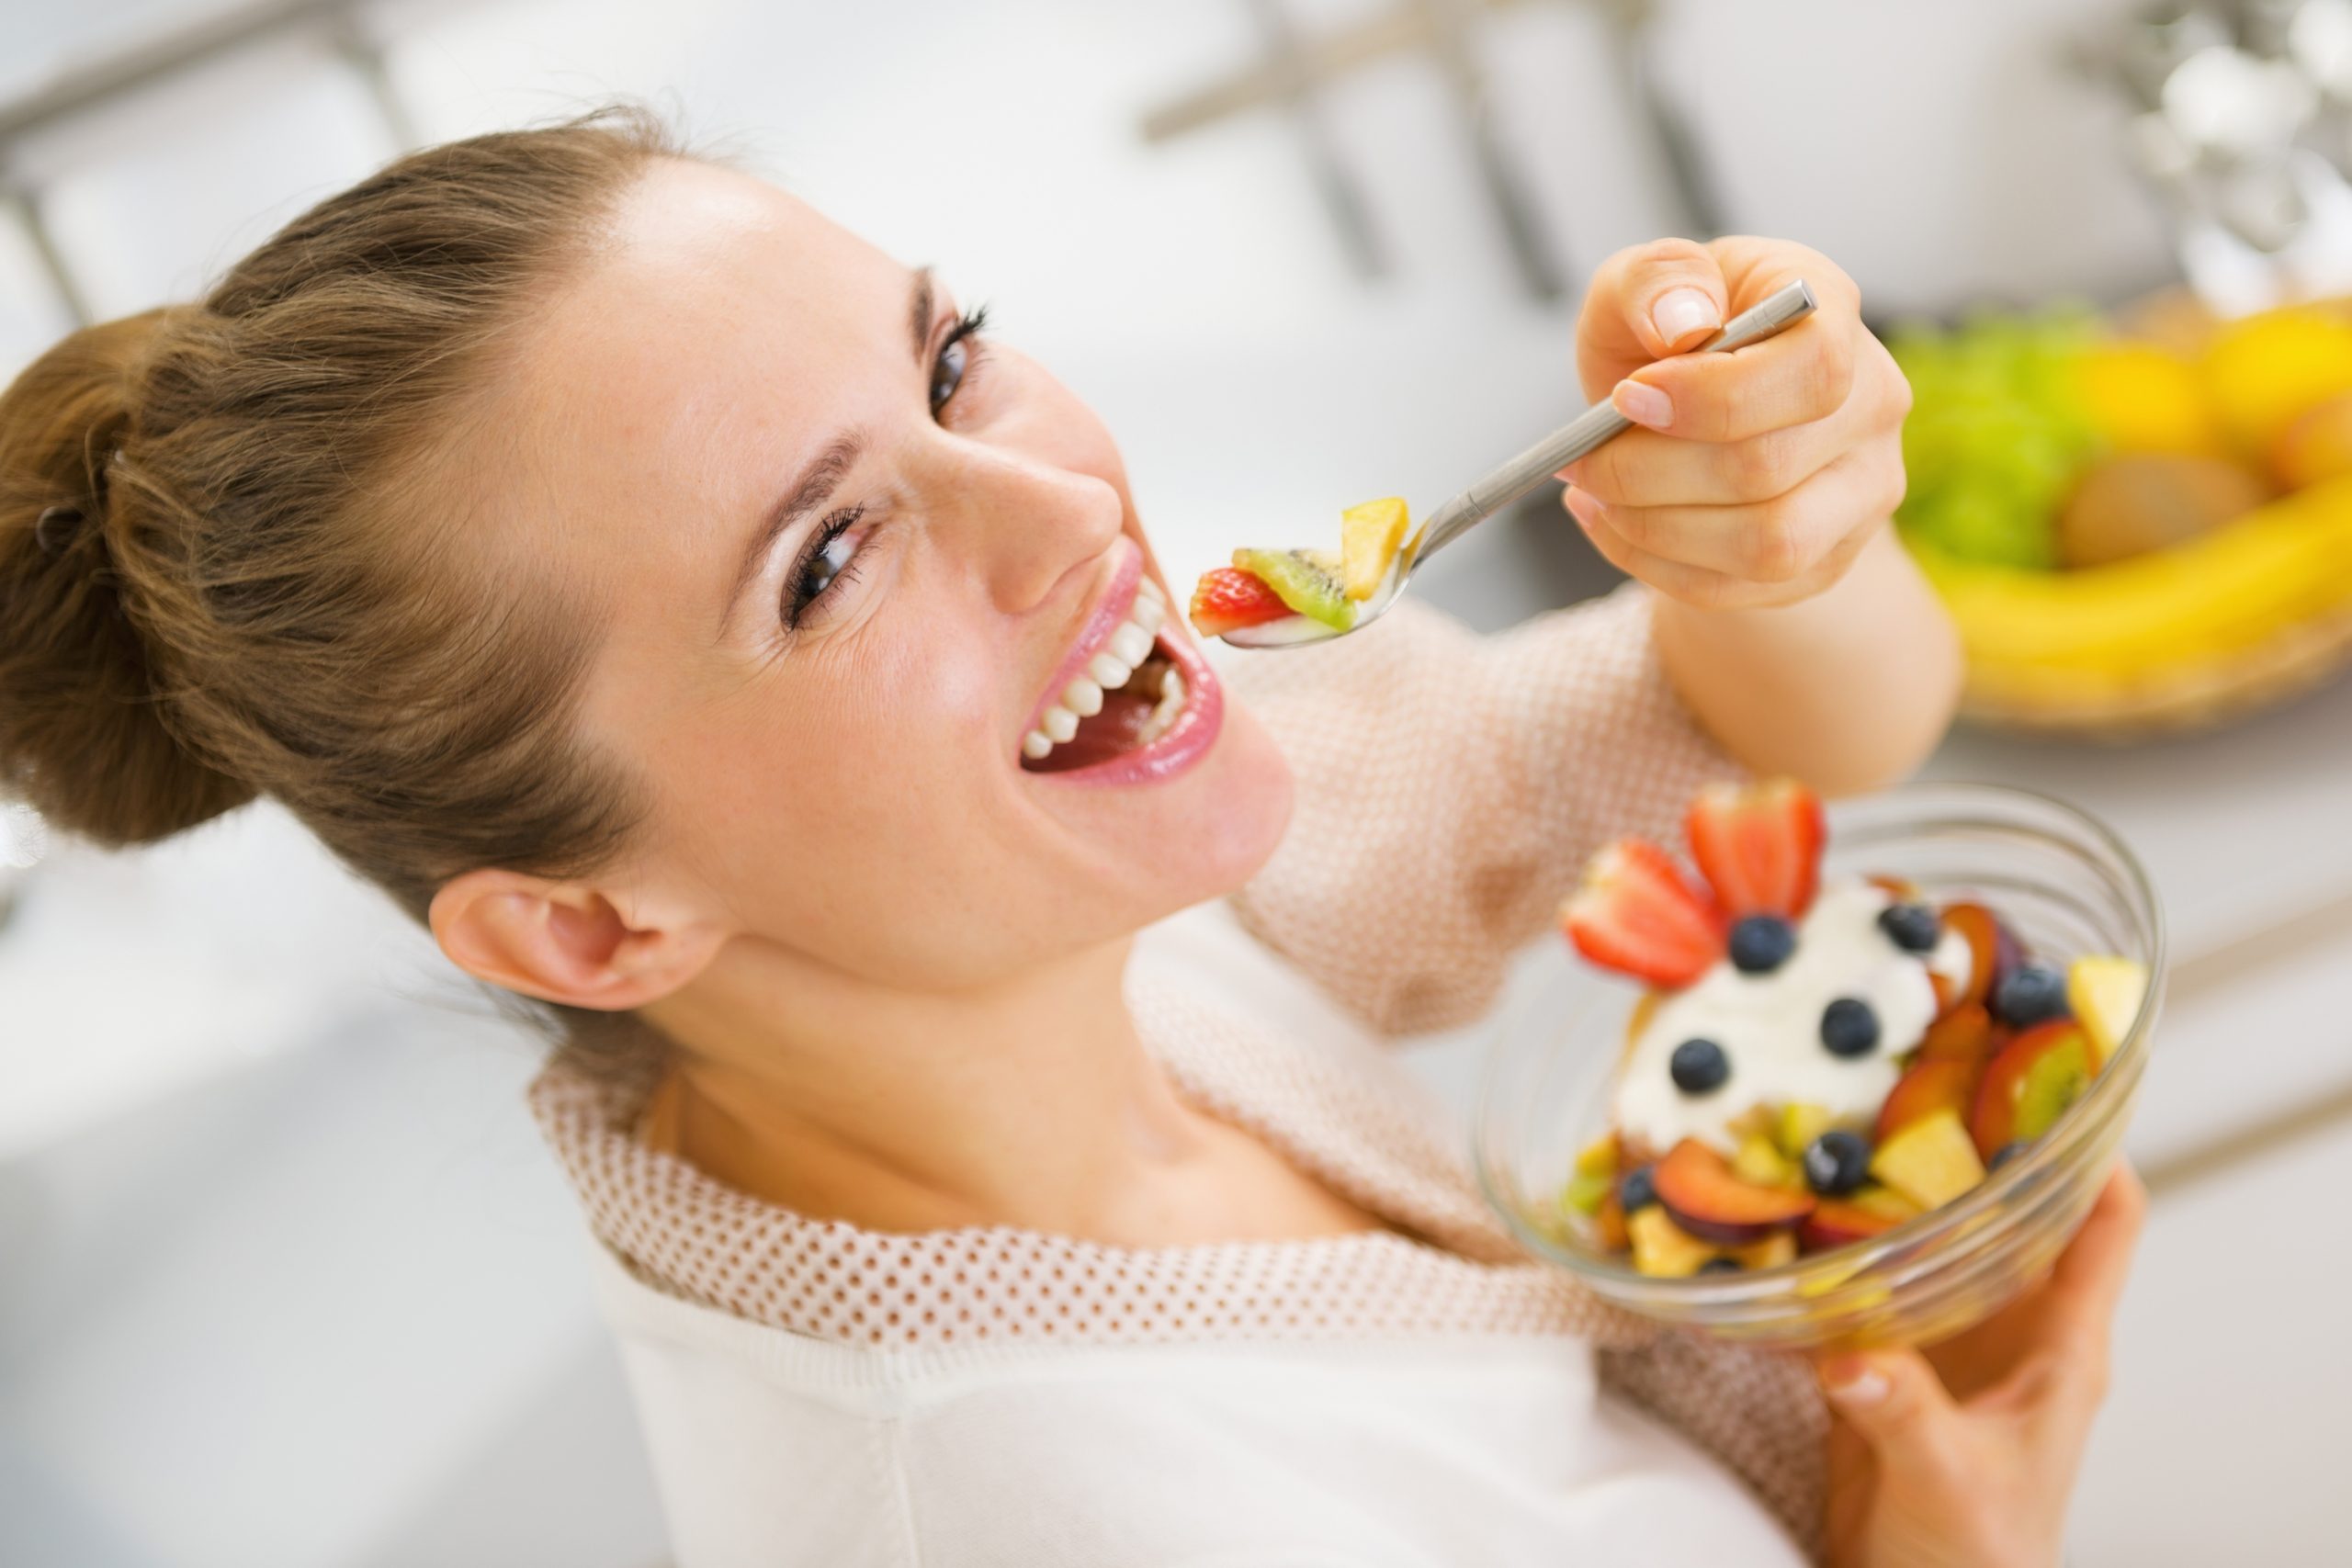 Cosa sai sull'alimentazione sana negli adulti